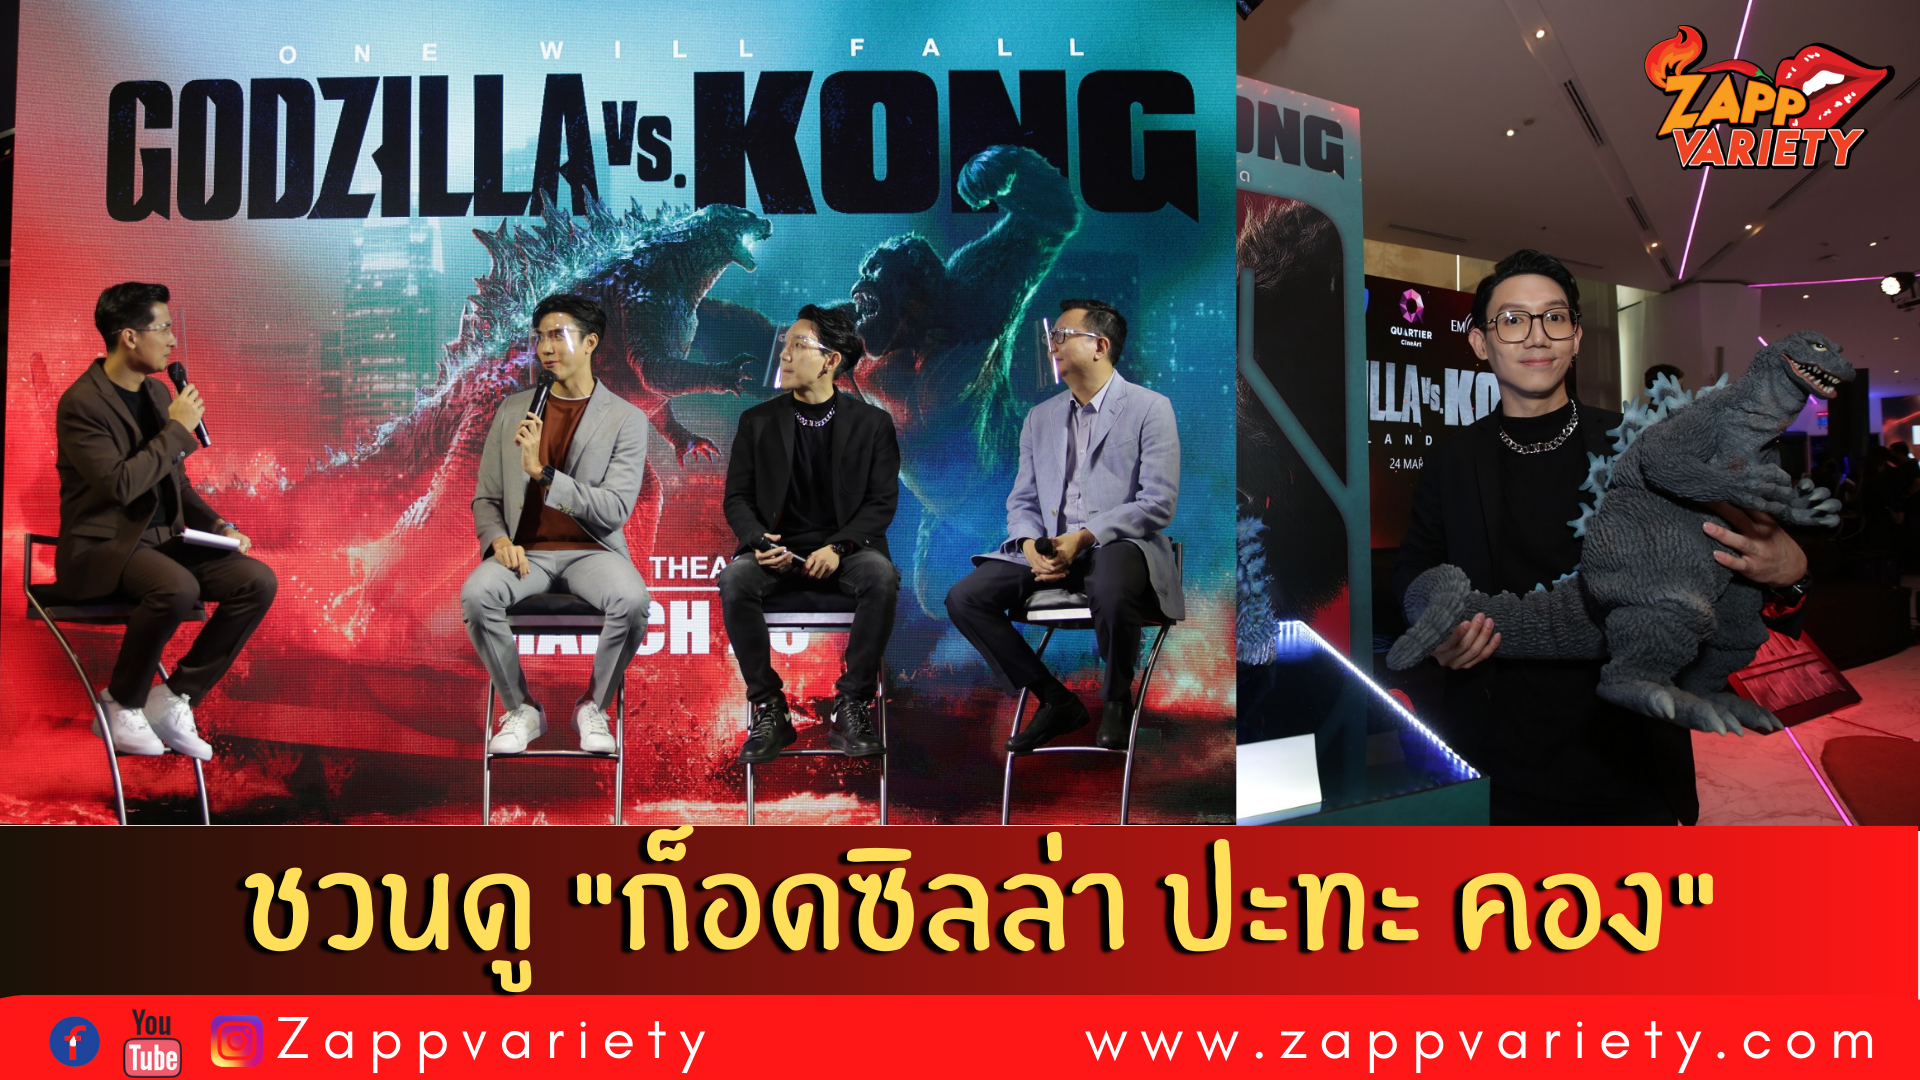 สิ้นสุดการรอคอย “Godzilla vs. Kong” เข้าฉาย 25 มีนาคมนี้  เหล่าคนดังตบเท้าร่วมสัมผัสความยิ่งใหญ่ในงาน  “Thailand Gala Premiere Godzilla vs. Kong” รอบแรกในไทย